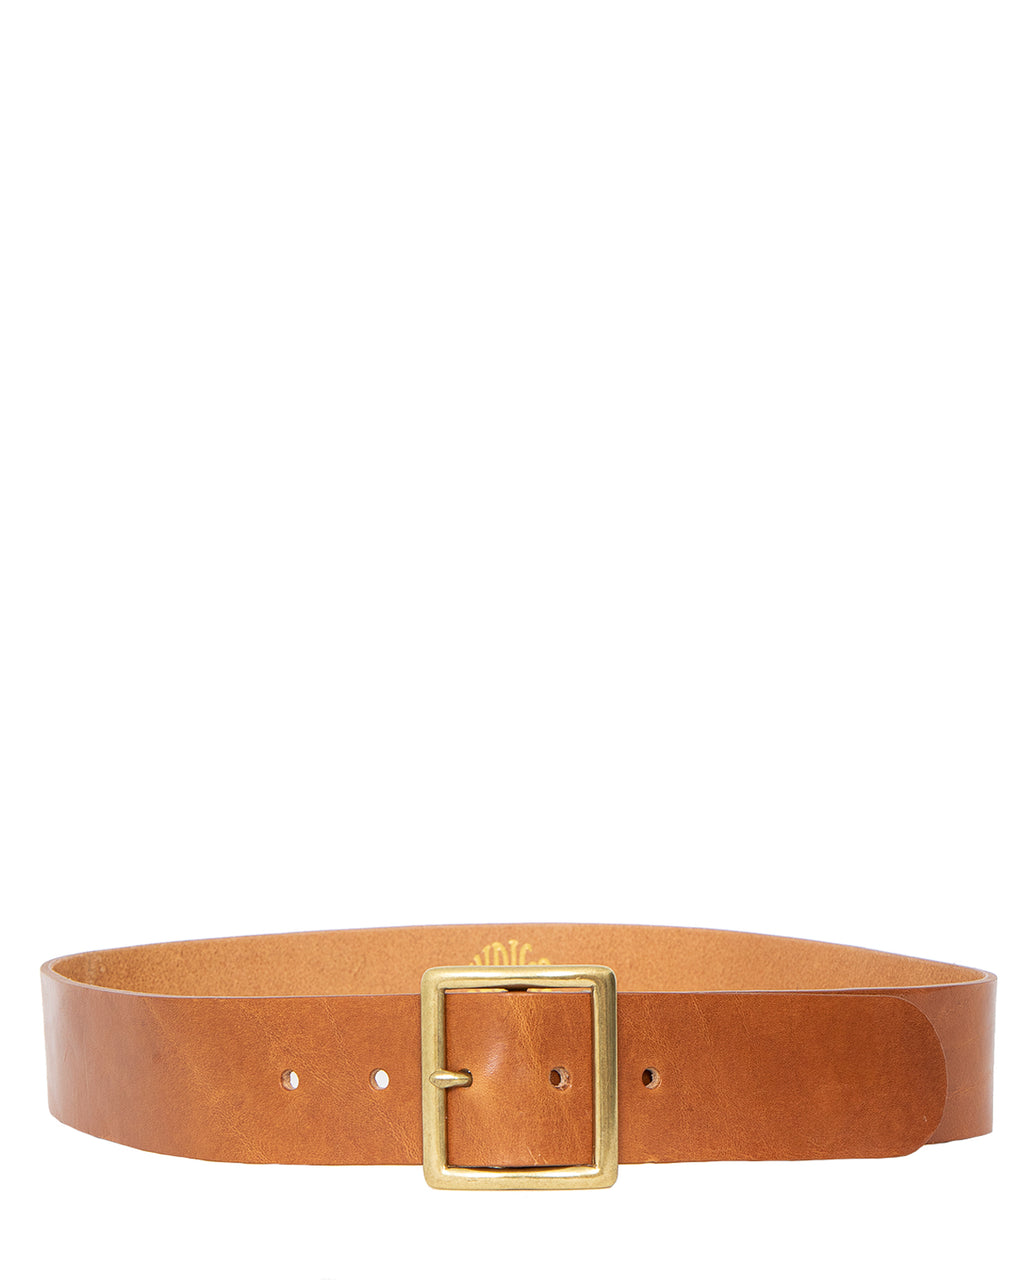 Indigofera Levon Leather Belt, Light Brown